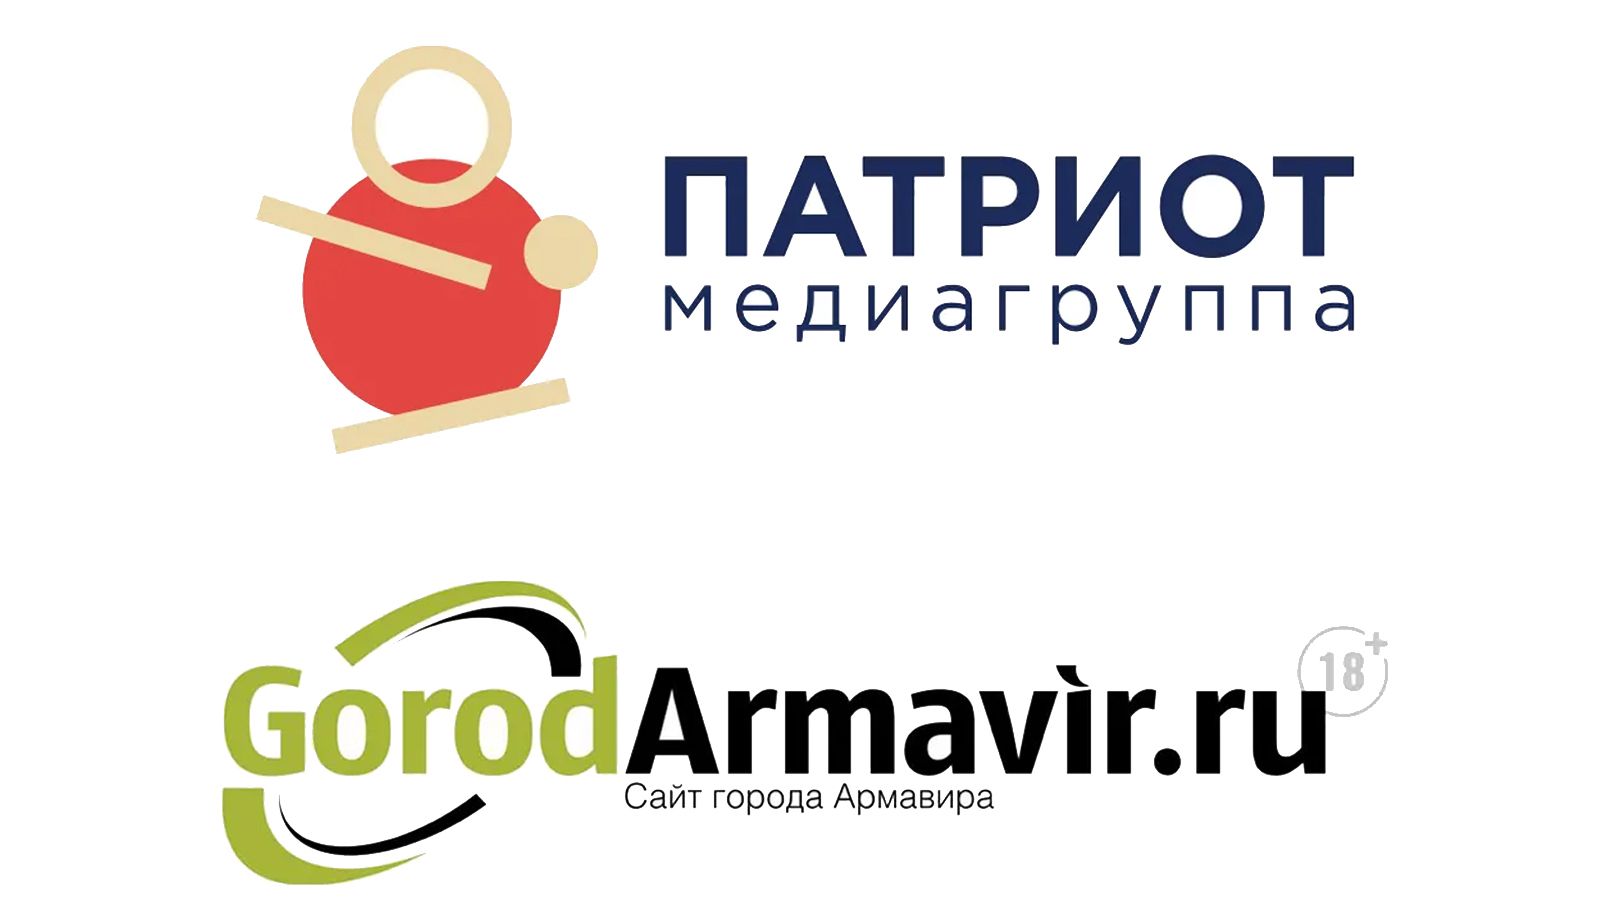 Медиагруппа «Патриот» и портал Gorodarmavir.ru стали партнерами Общество